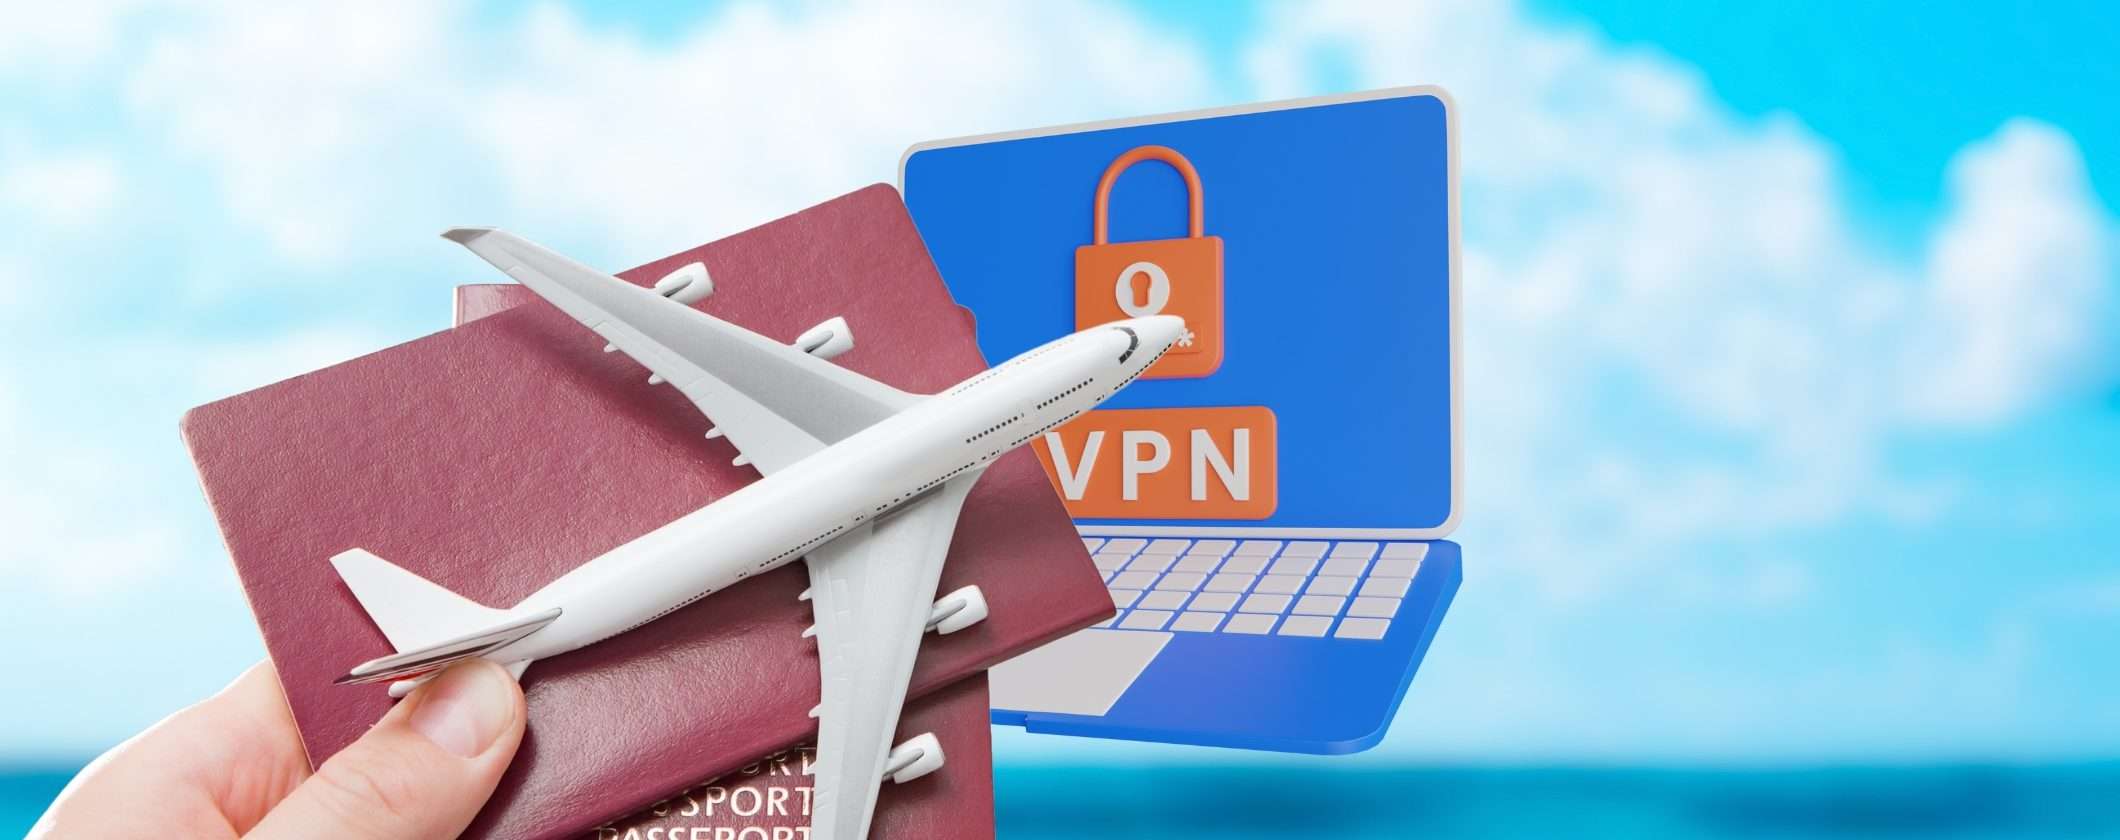 Perché viaggiare con una VPN dovrebbe renderti più tranquillo?